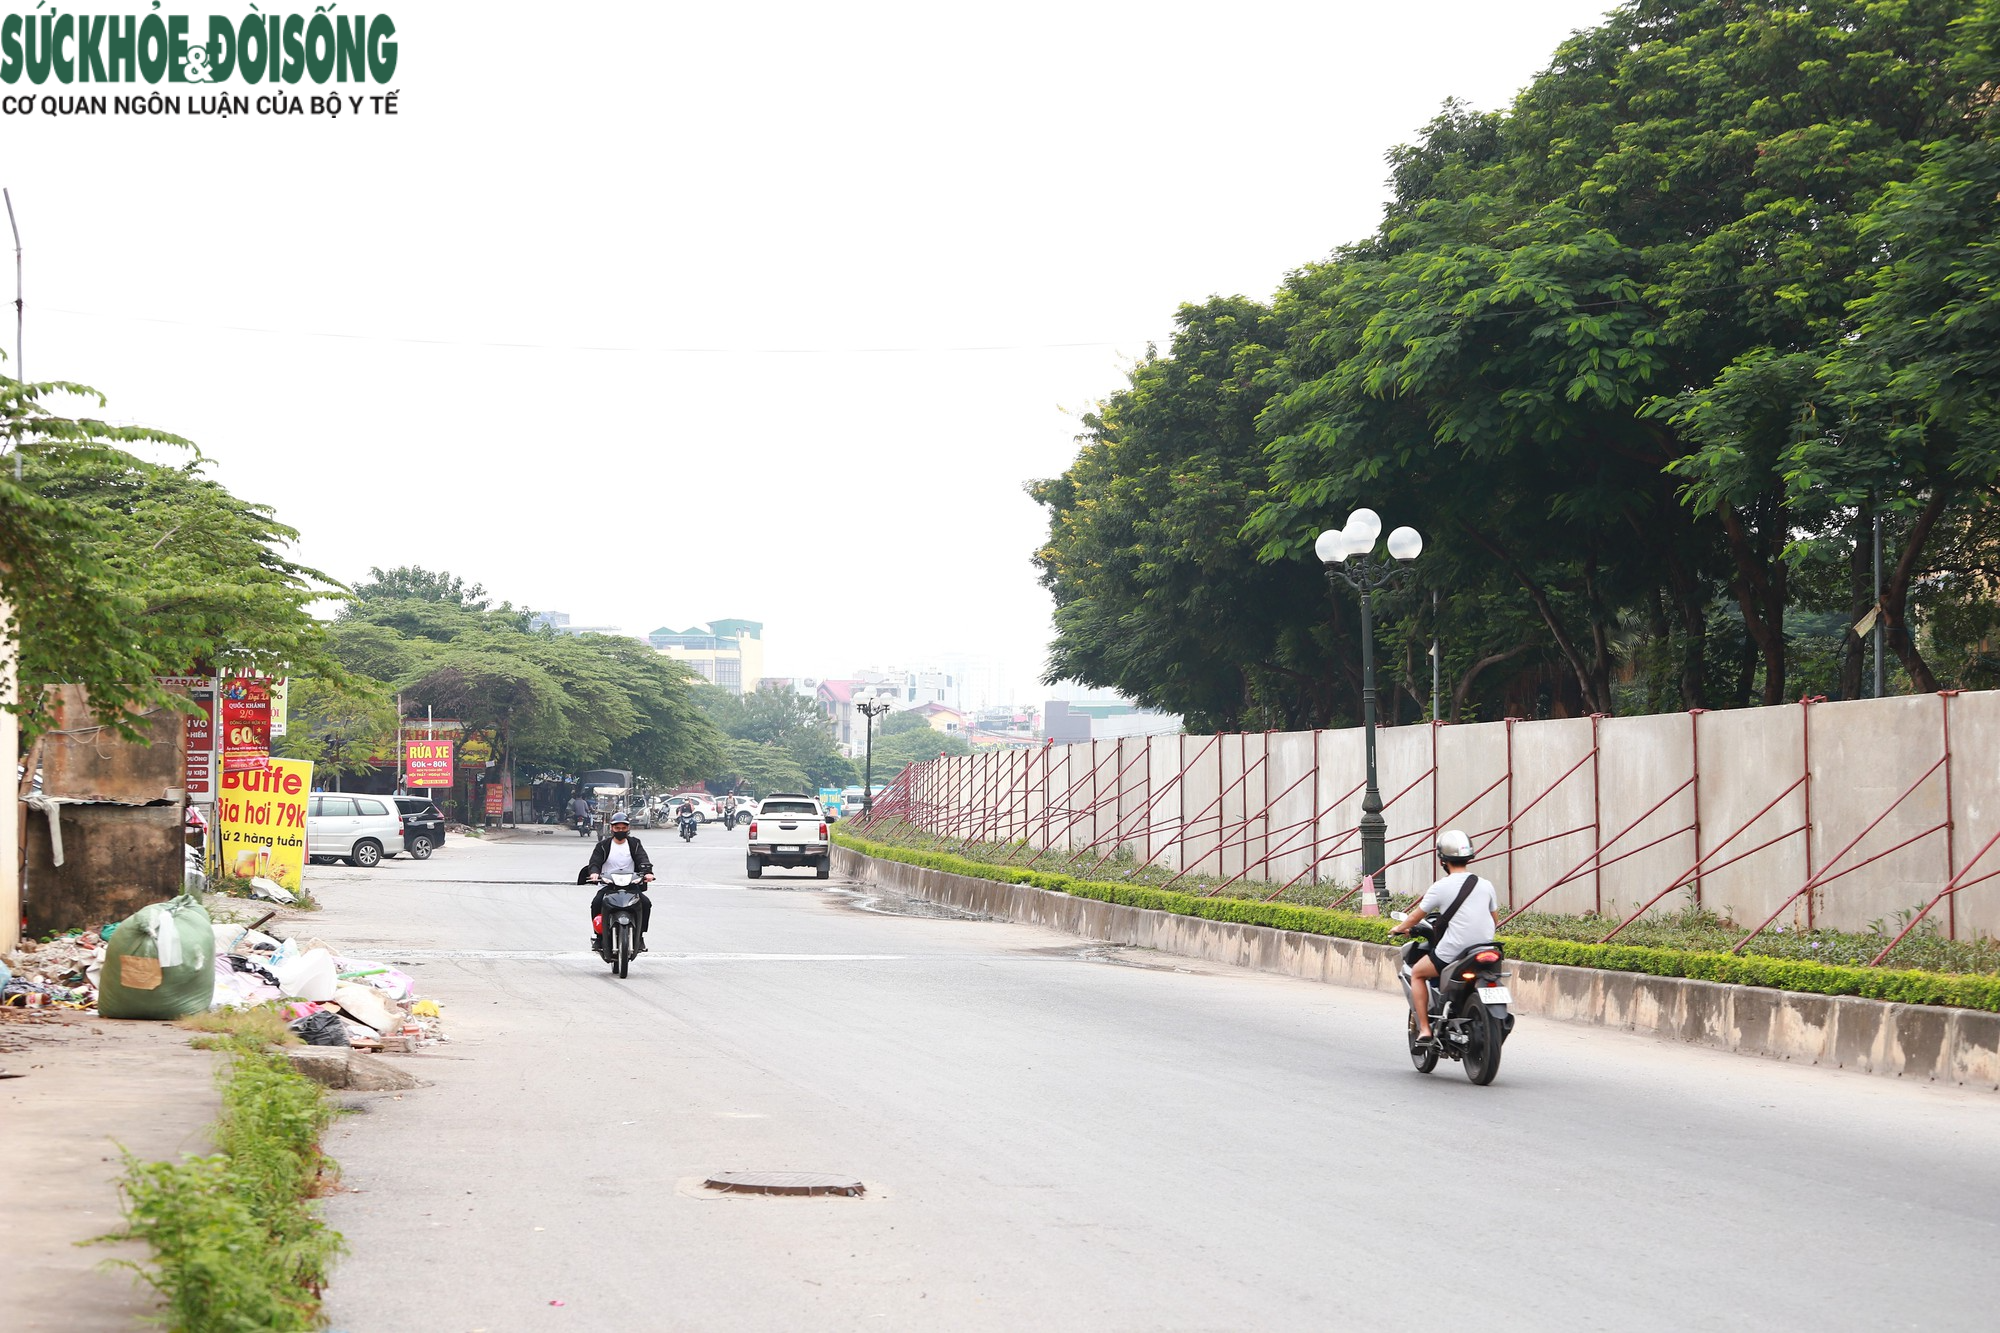 Cận cảnh khu vực rào bê tông chắn đường dân được Hà Nội yêu cầu phá bỏ - Ảnh 4.